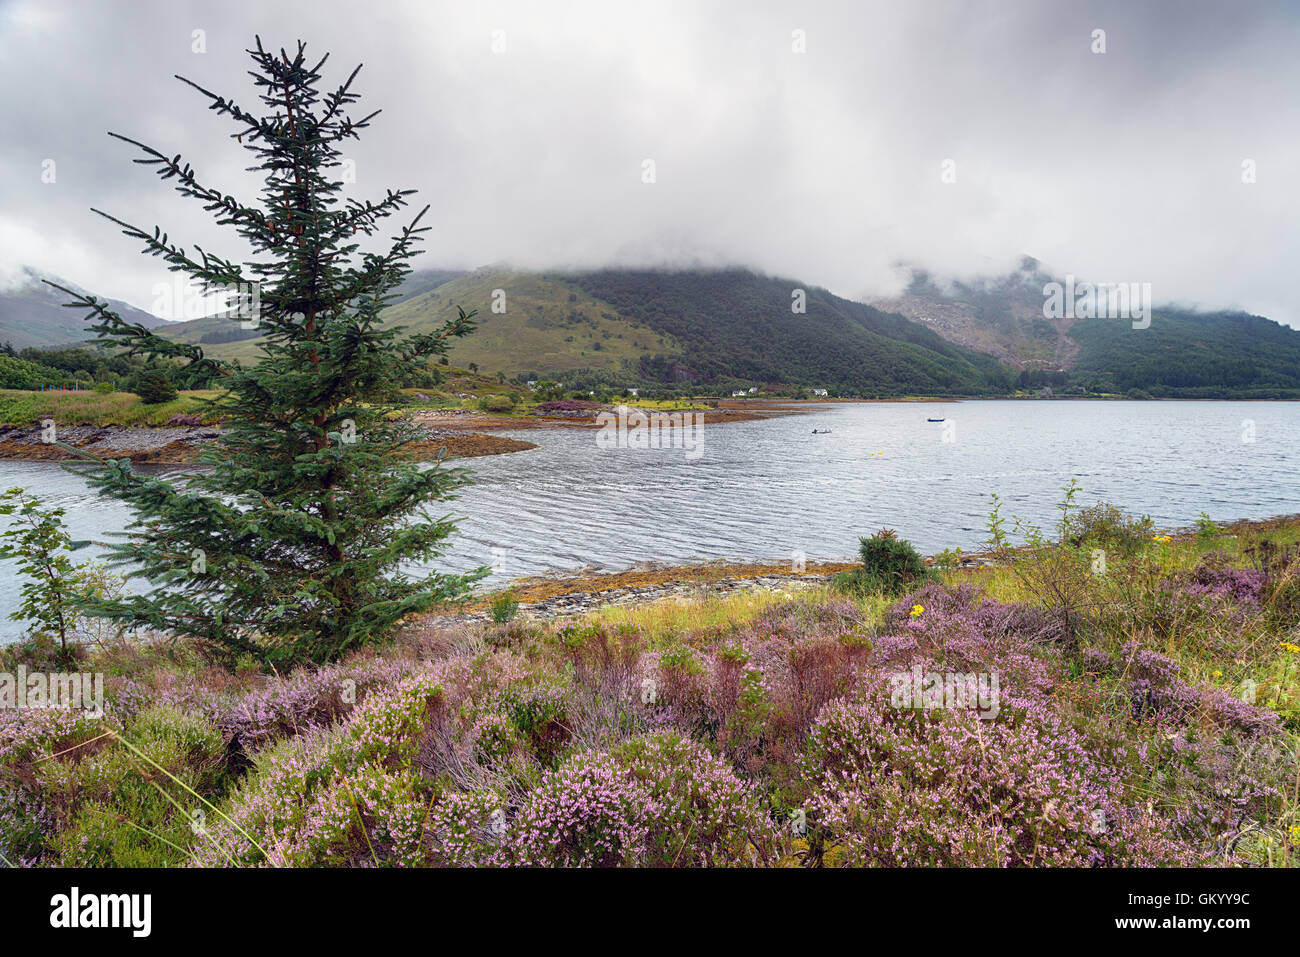 Un jour de pluie à Loch Leven près de Glencoe dans les Highlands écossais Banque D'Images